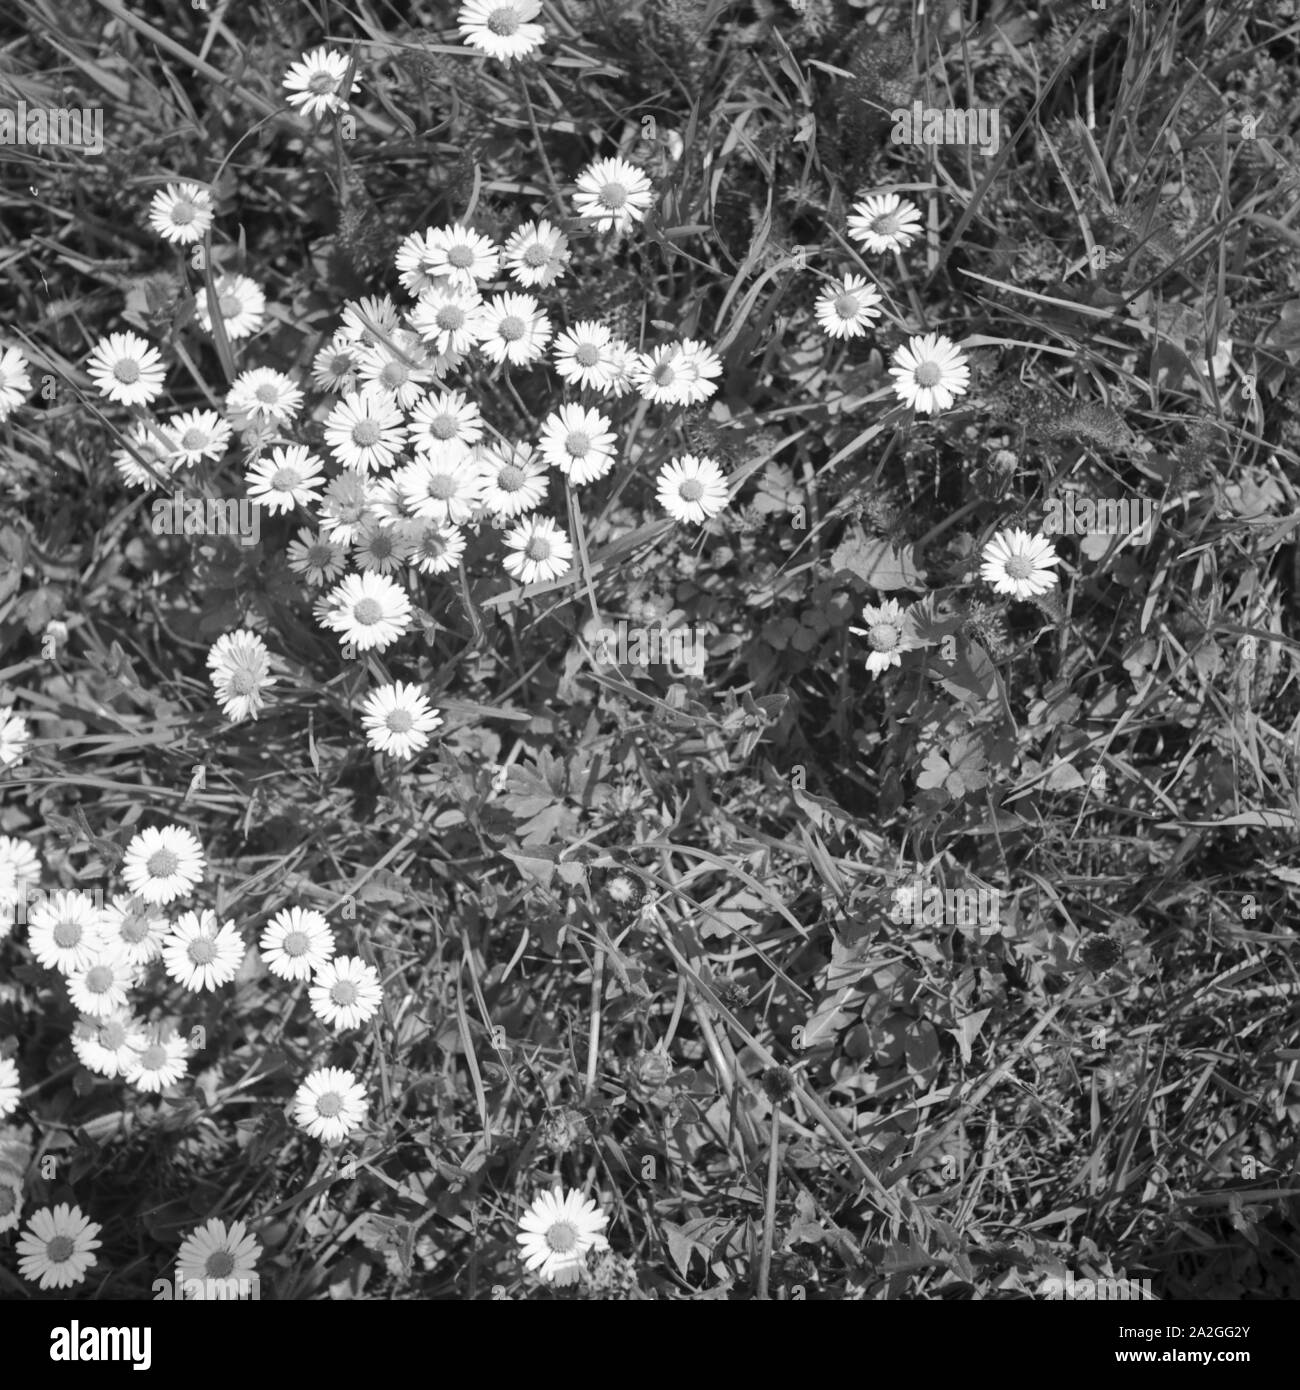 Blumen auf einer Wiese, Deutschland 1930er Jahre. Flowers in a lawn, Germany 1930s. Stock Photo